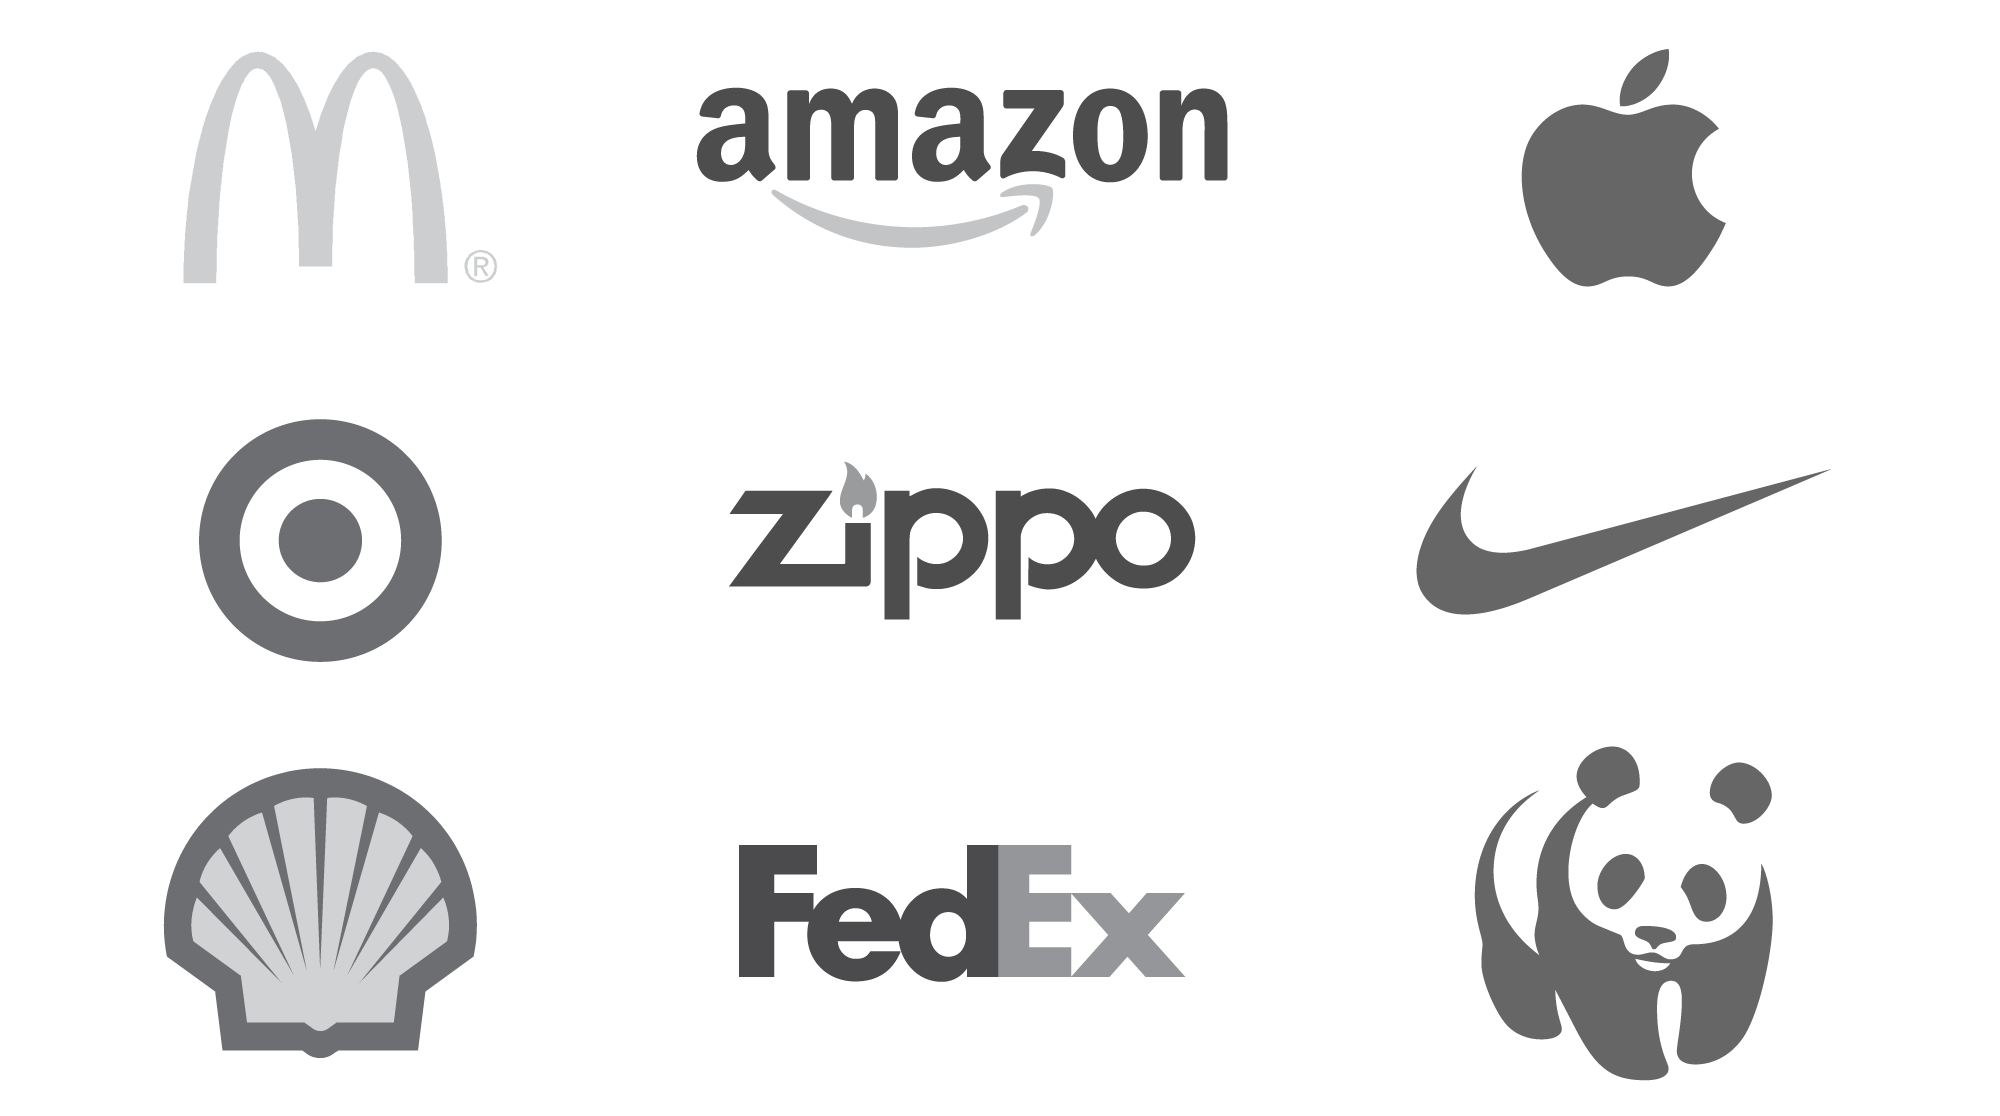 Easy Company Logos To Draw